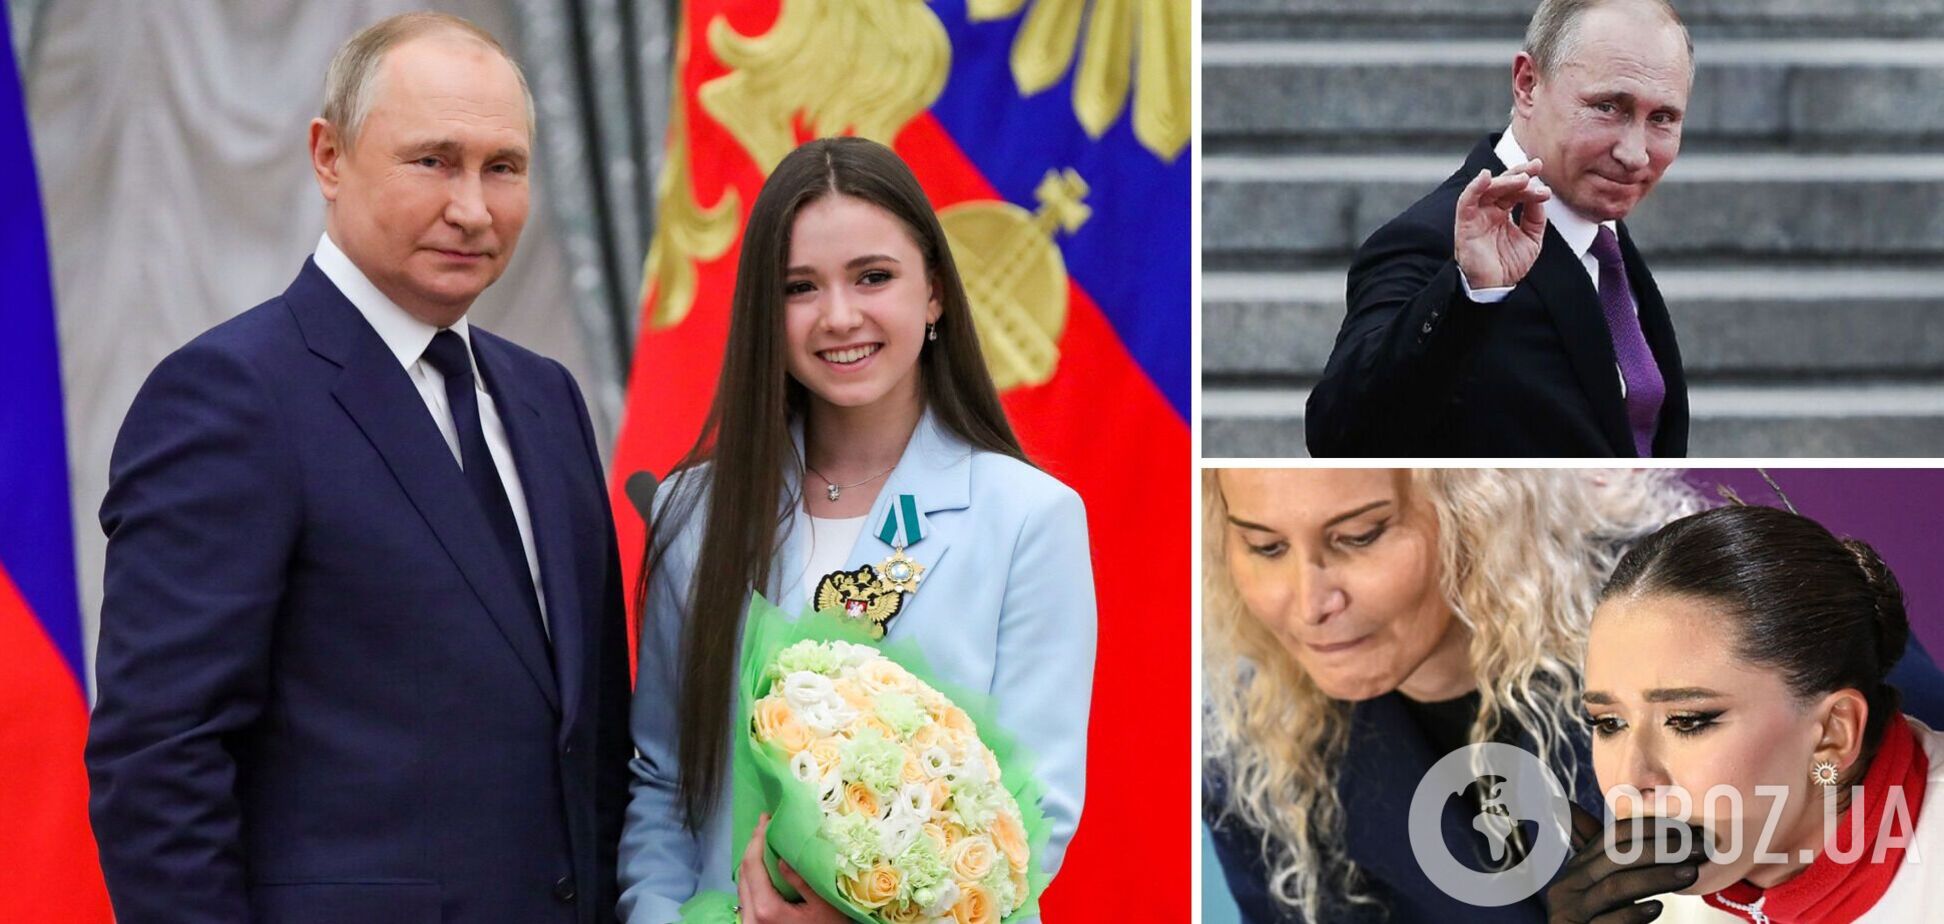 'Выборы прошли, больше не нужна'. Путин лишил свою 'новую любовницу' президентской стипендии